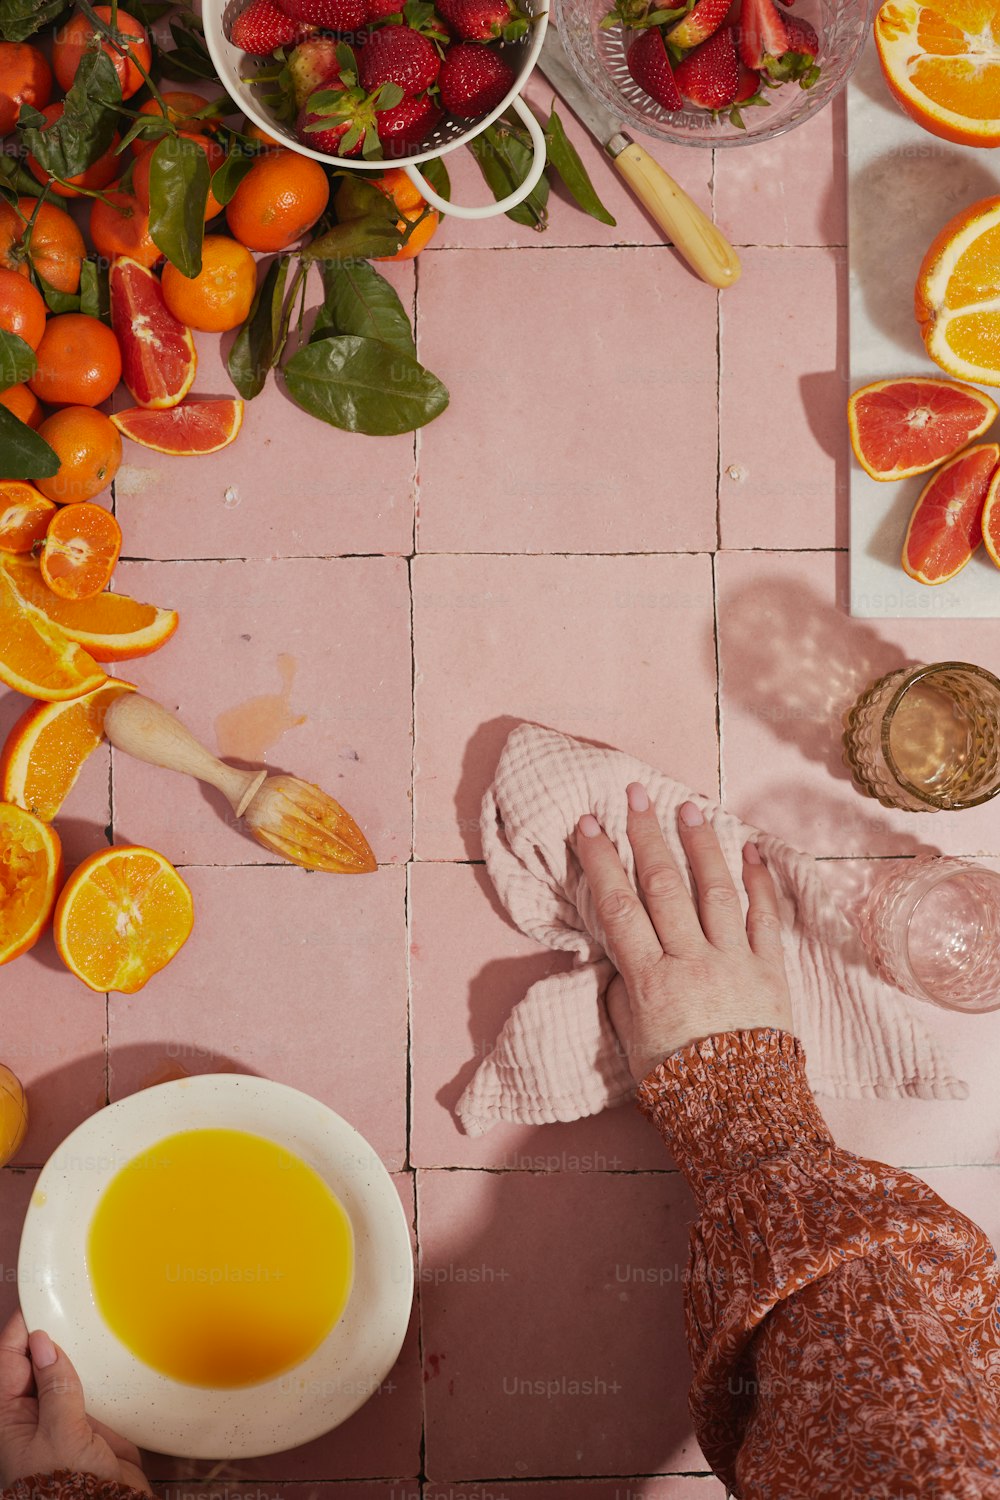 Una persona se está lavando los pies en un tazón de jugo de naranja